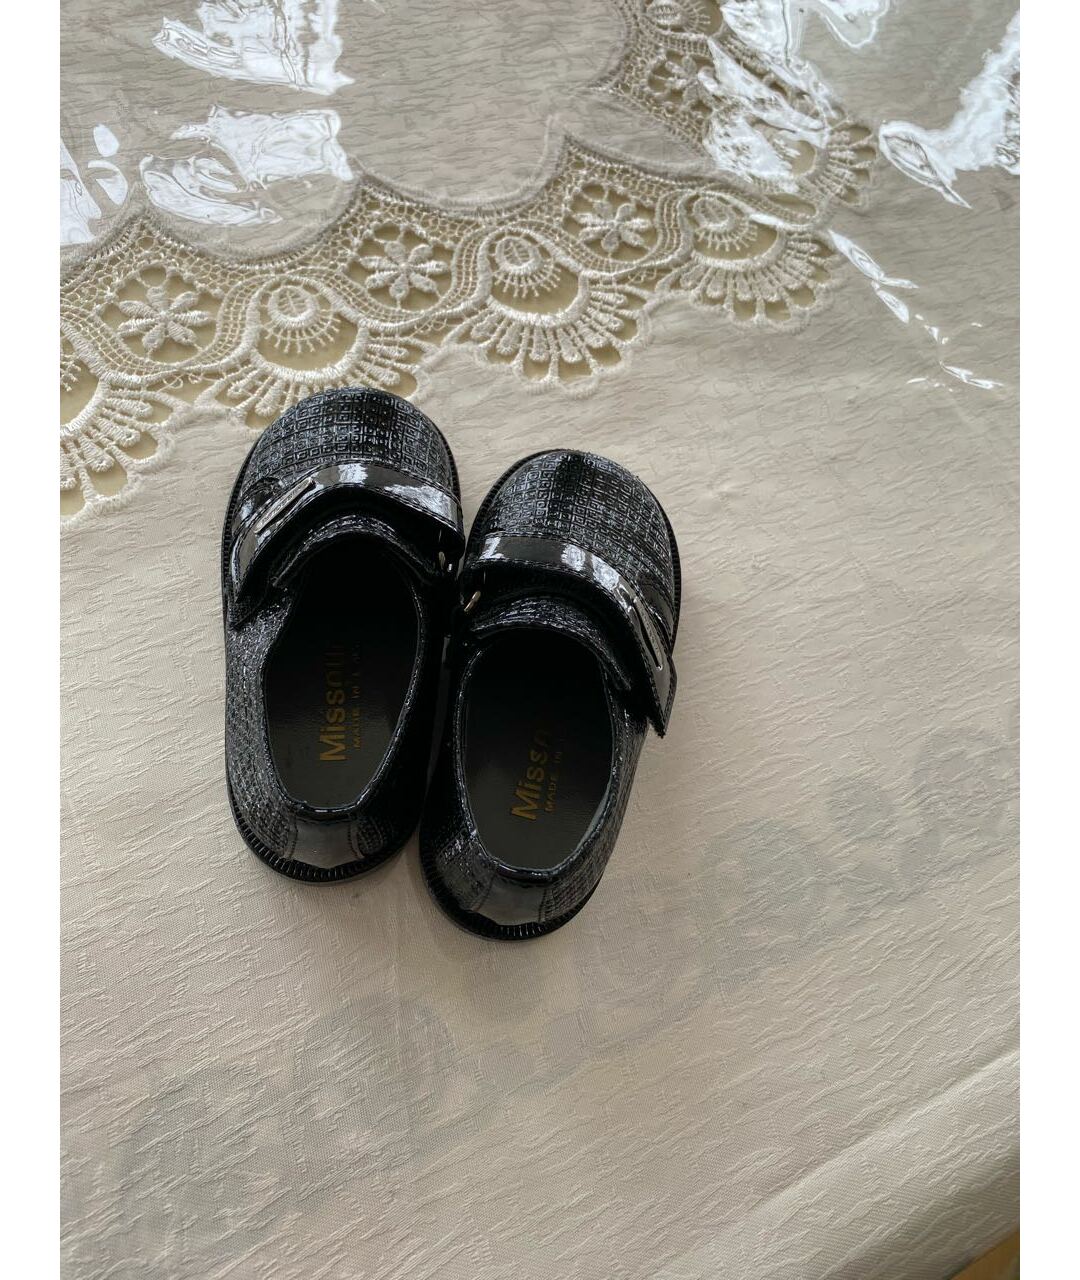 MISSOURI Черные ботинки из лакированной кожи, фото 2